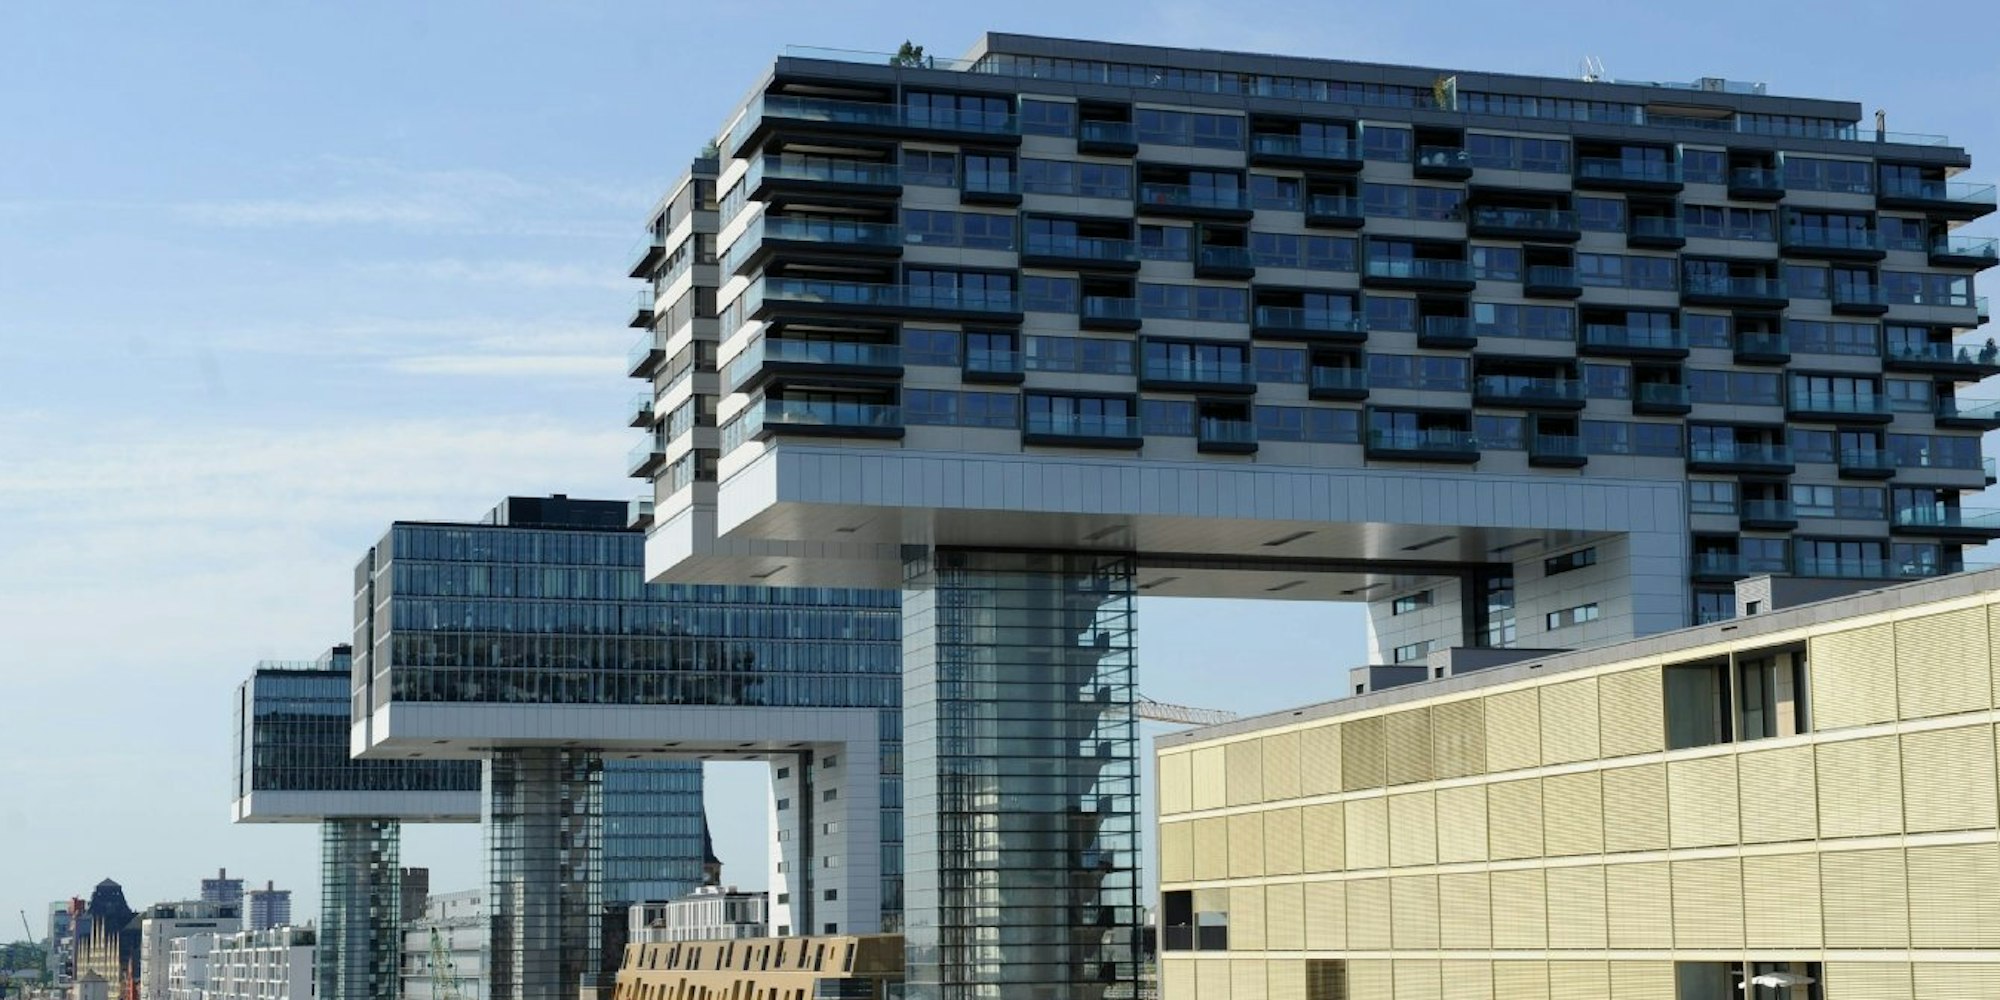 Das Gebäude-Ensemble (links zwei Büro-Kranhäuser) gilt als neues Wahrzeichen Kölns.